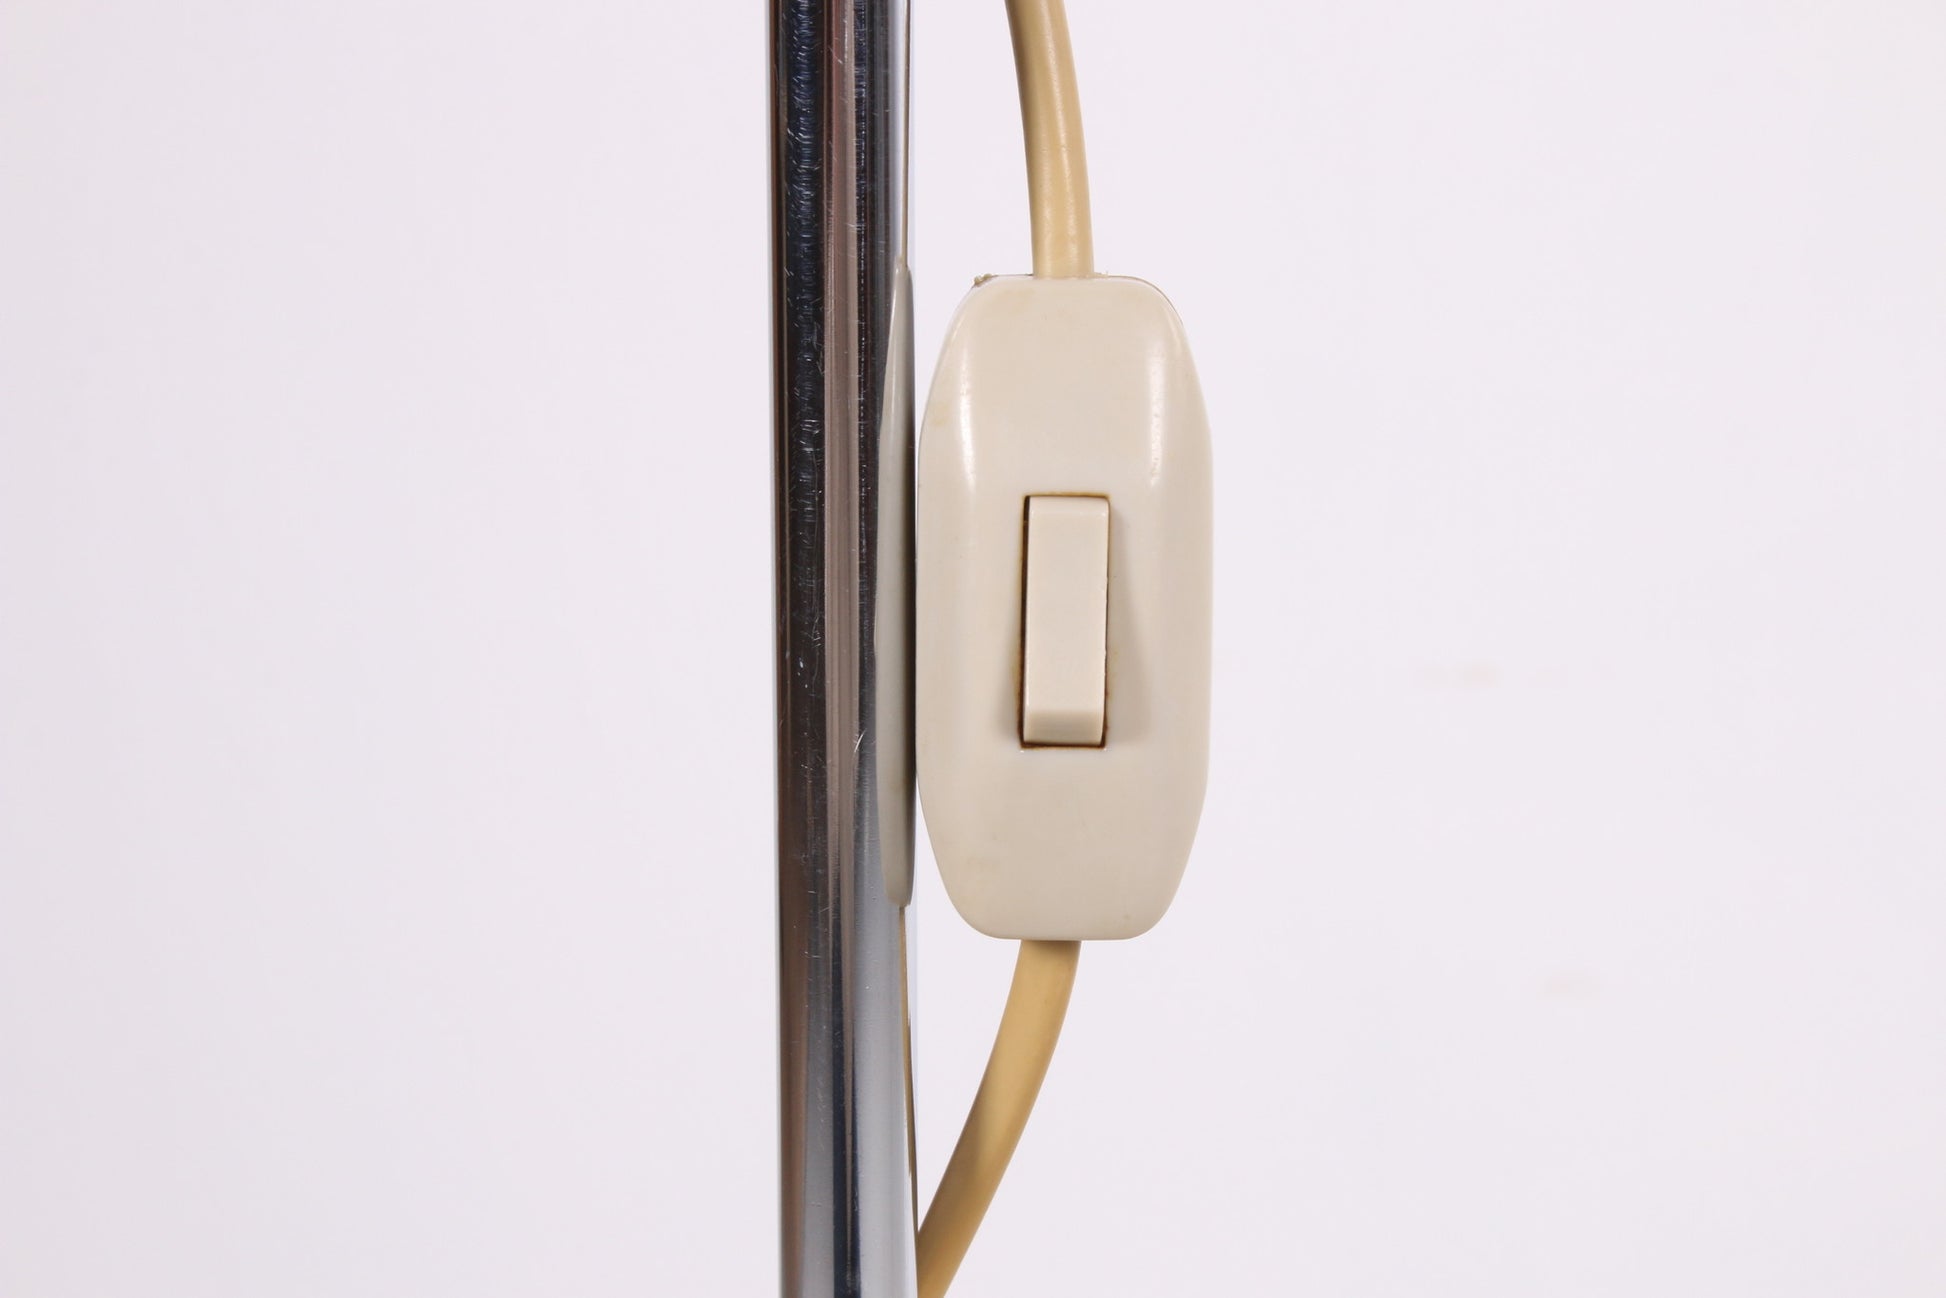 Aluminium hengellamp uit denemarken met verstelbare spot detail aan en uit knop